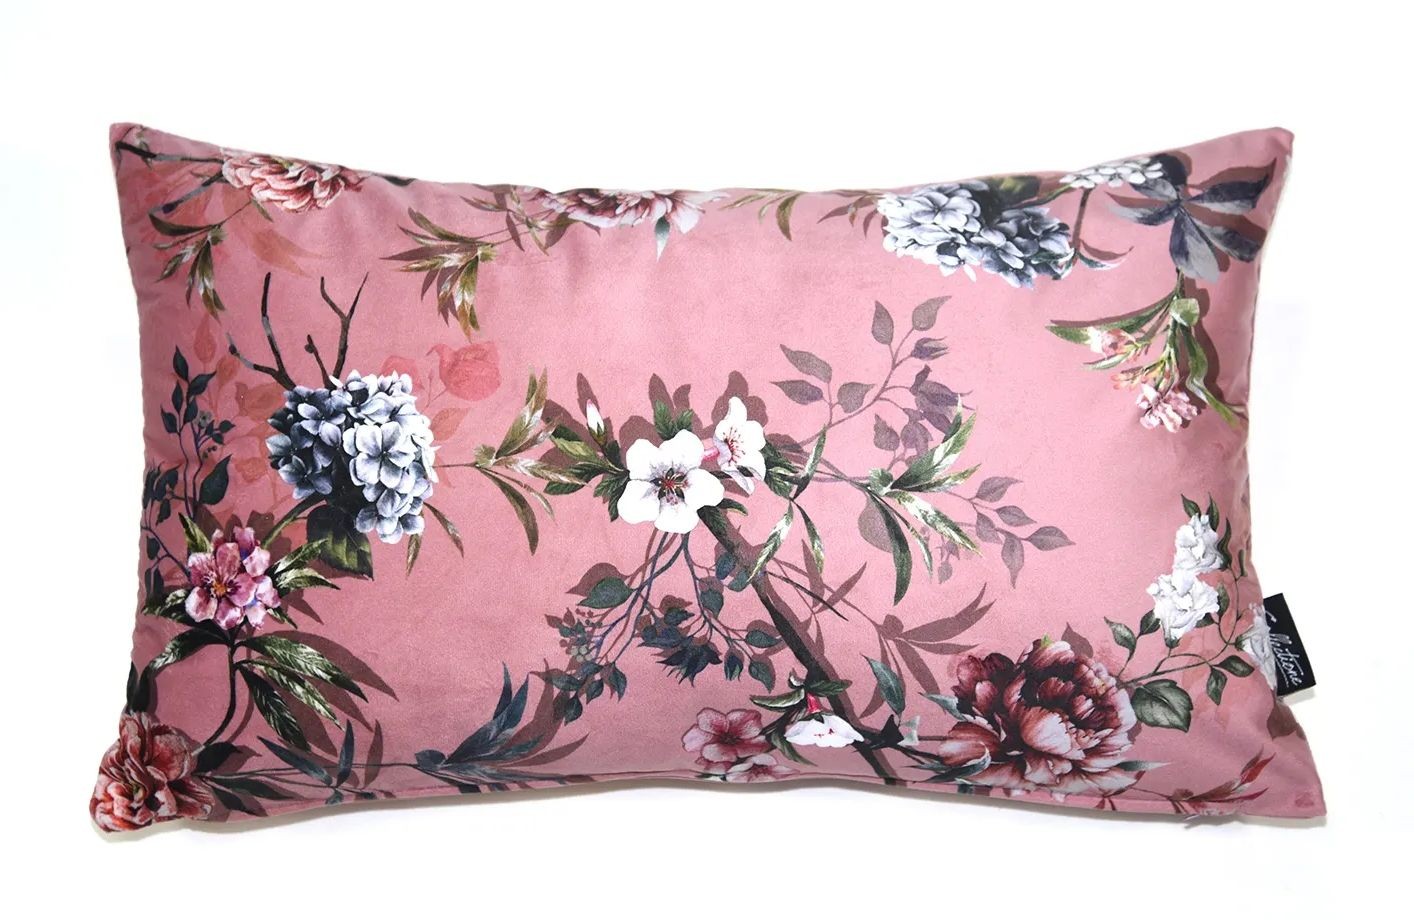 Růžový sametový polštář s květy Luisa roze- 30*50cm Collectione